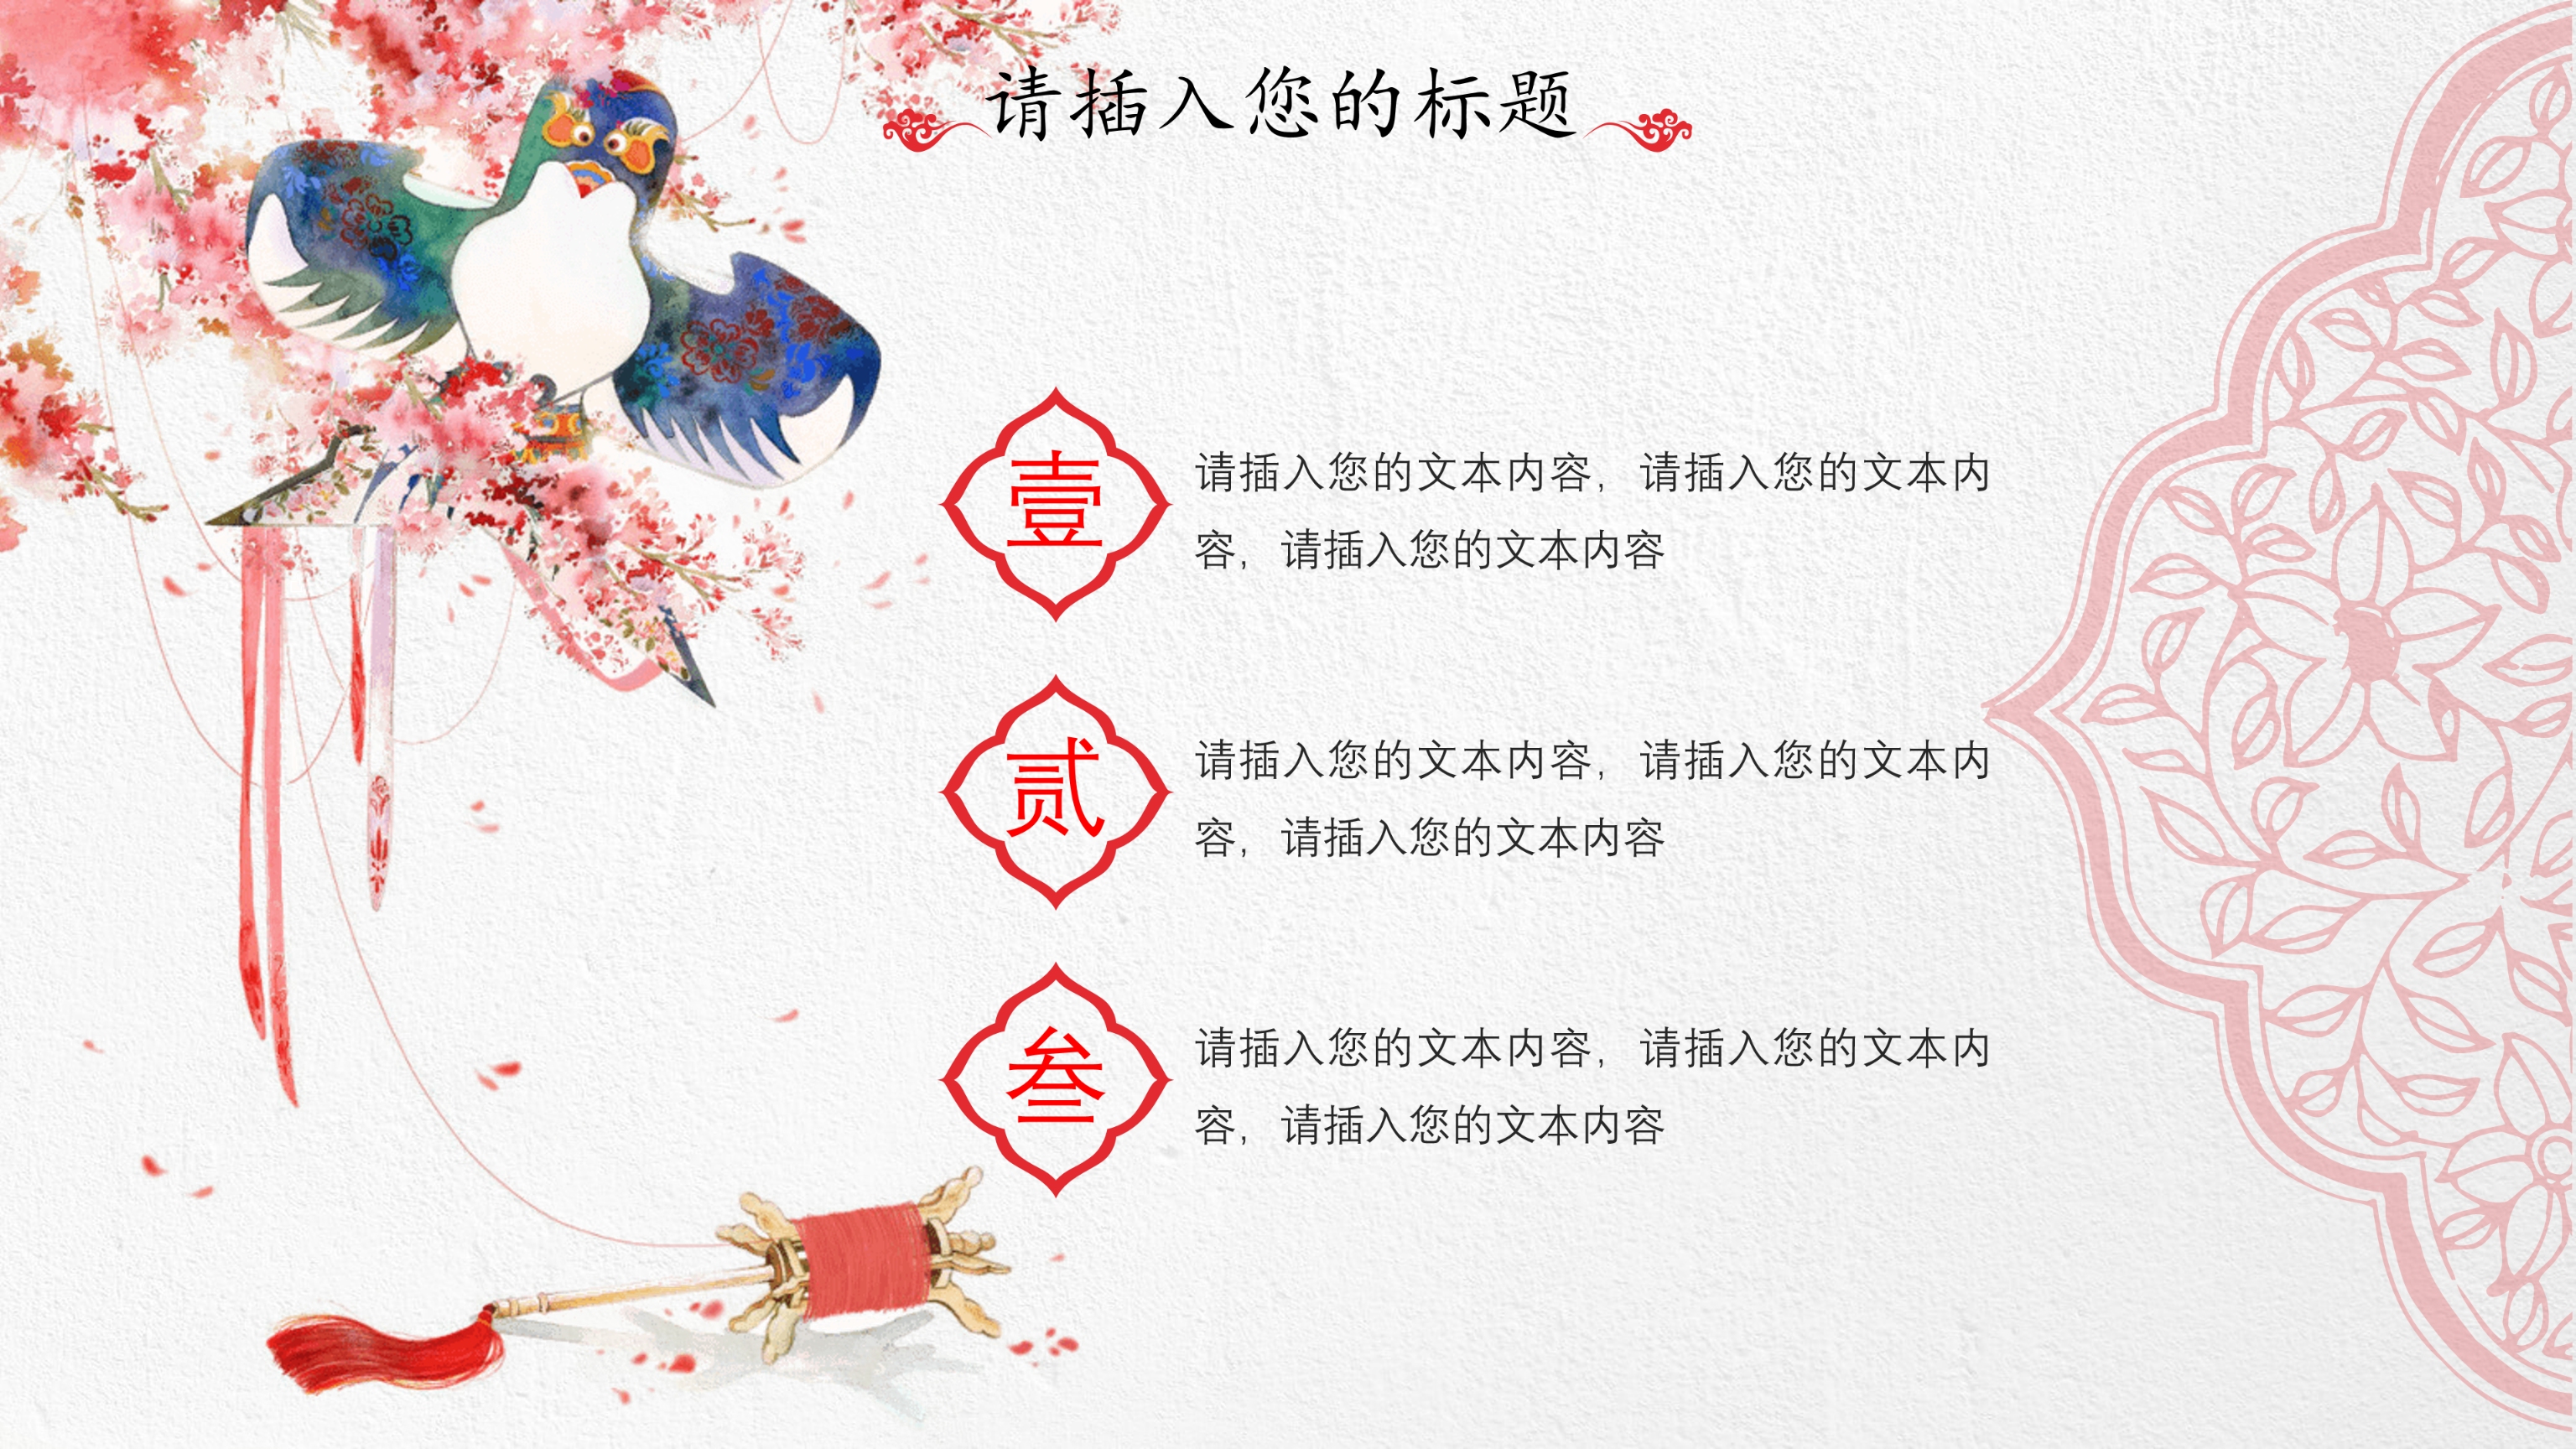 红伞创意典雅中国风PPT模板